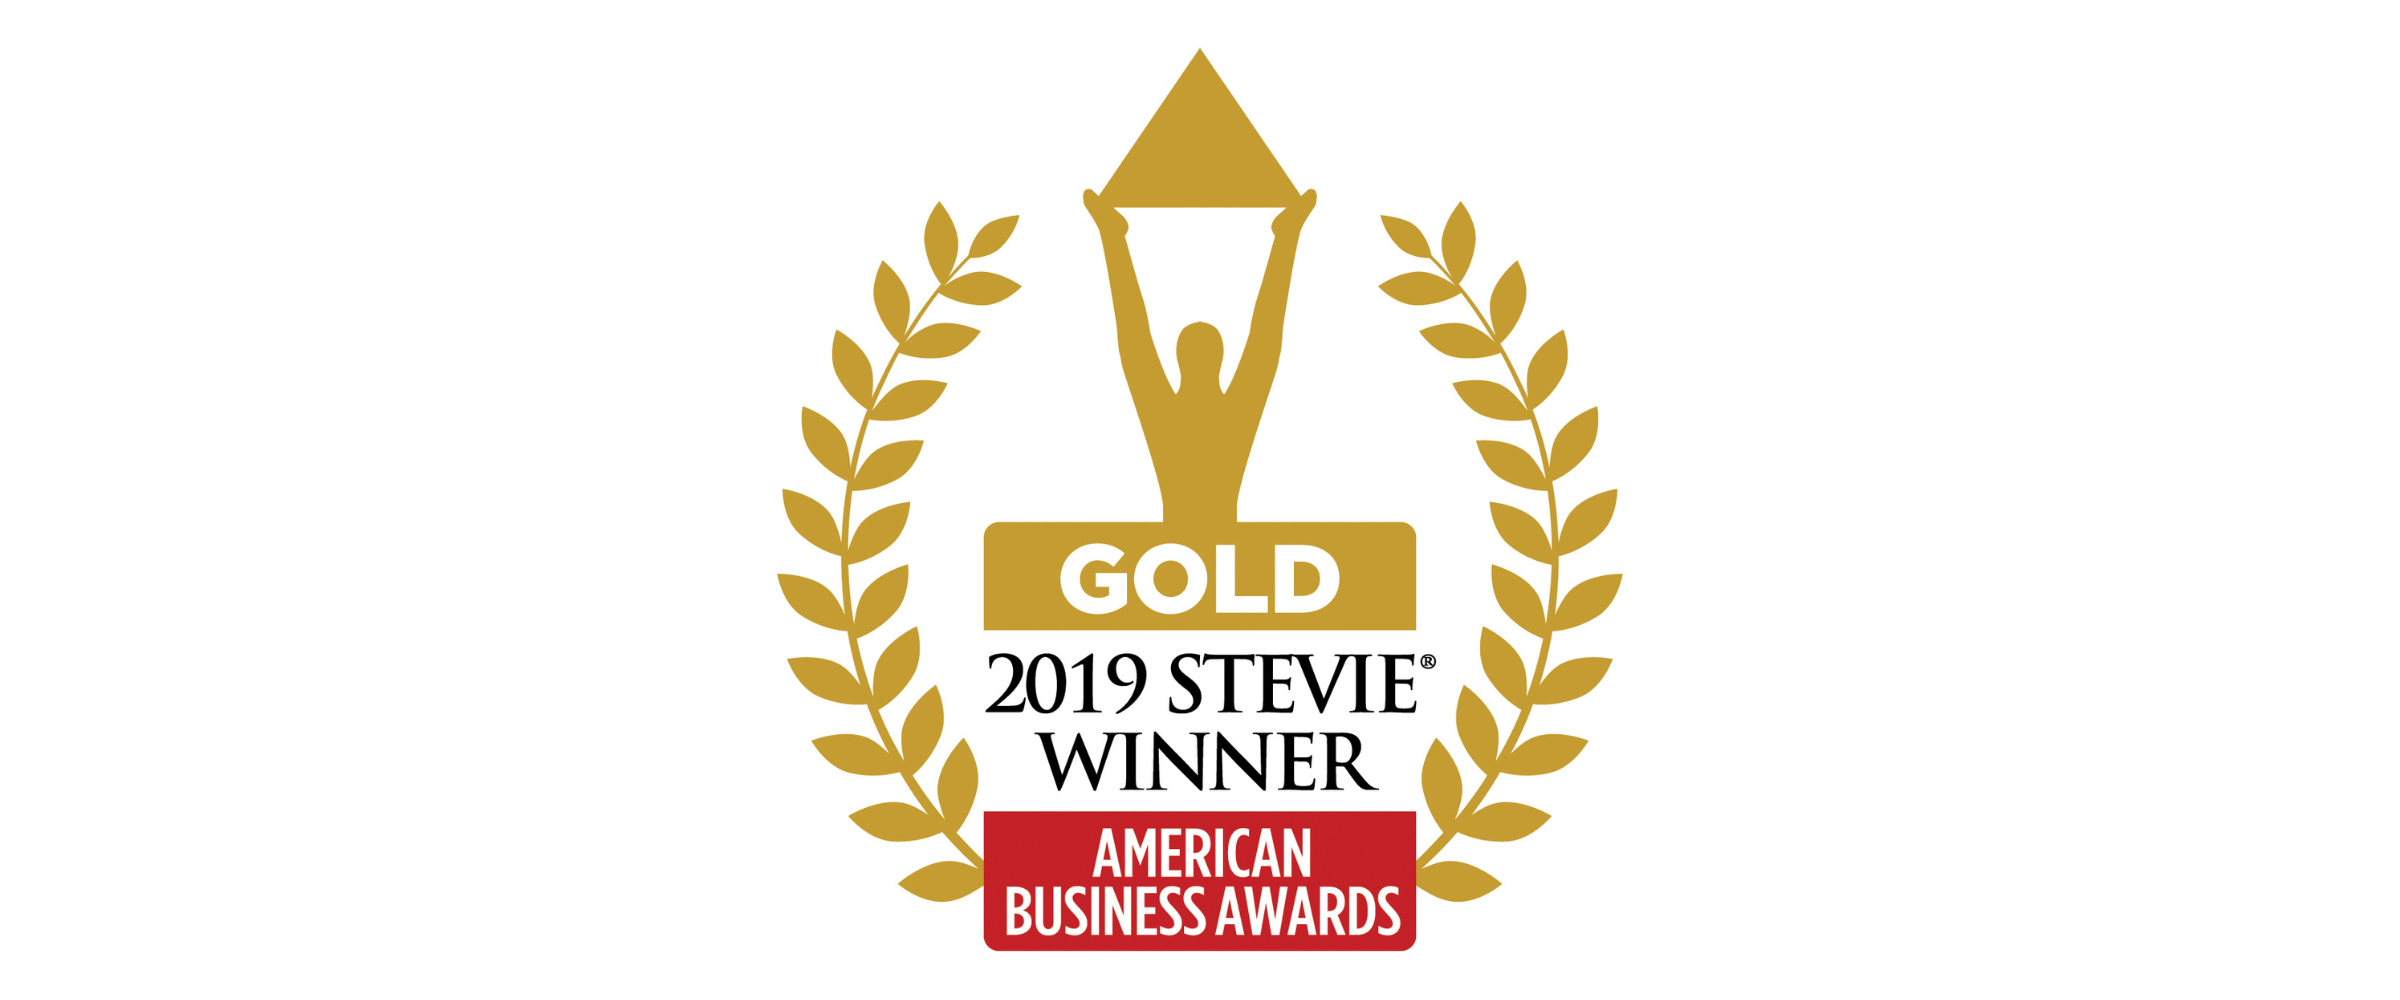 Gold Stevie award 2019